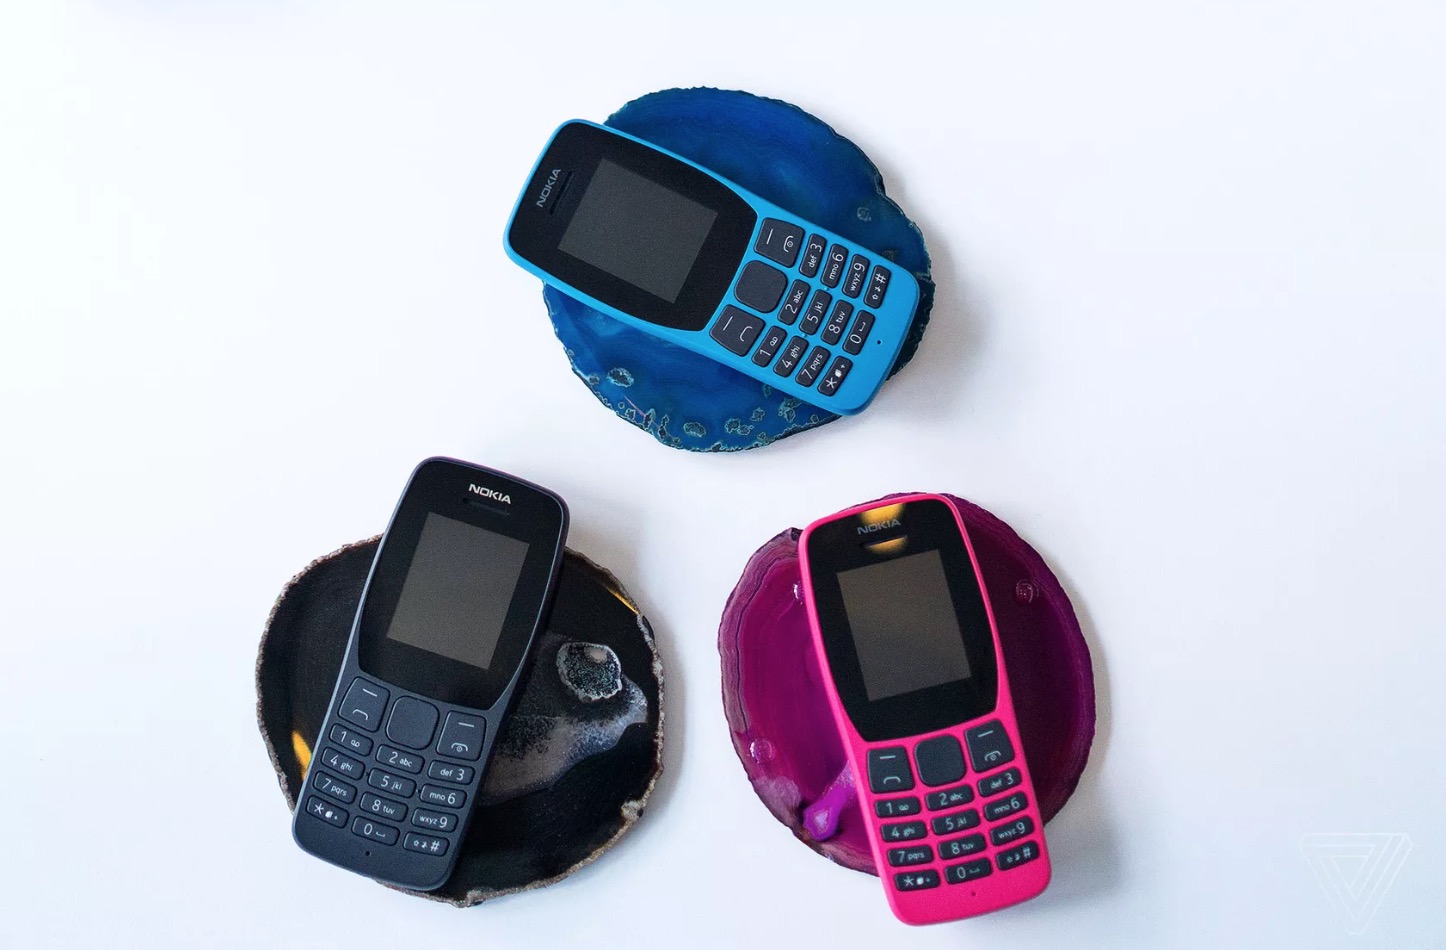 [IFA 2019] HMD ra mắt
Nokia 800 Tough nồi đồng cối đá và Nokia 110